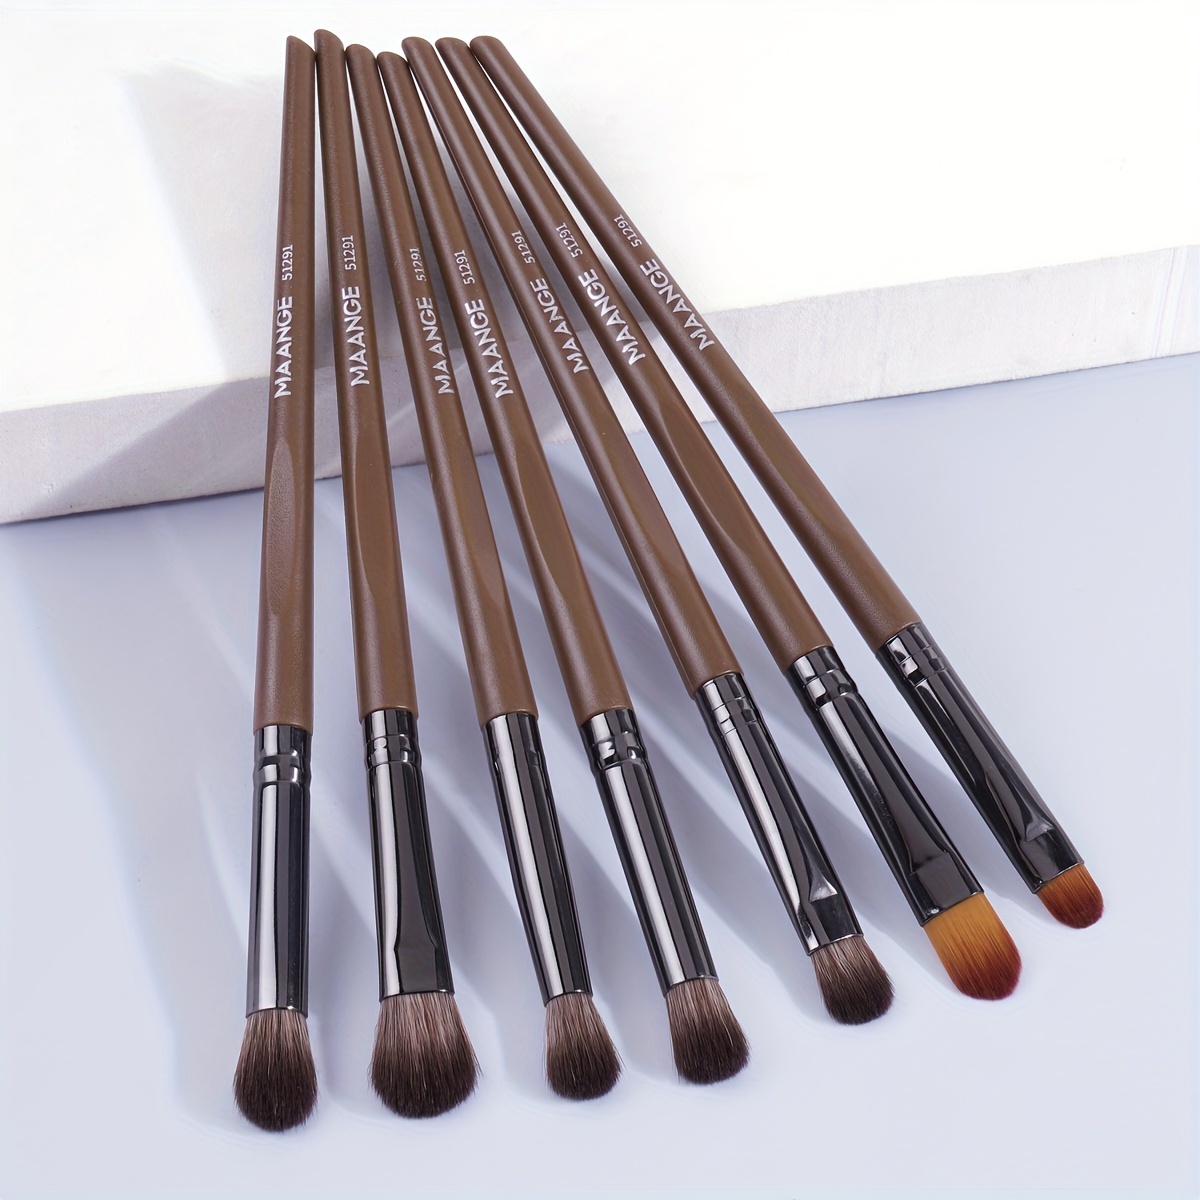  5pcs Ink Blending Brushes Oval Makeup Brush Craft Blender Brush  Assortment for Broad Application : Arts, Crafts & Sewing